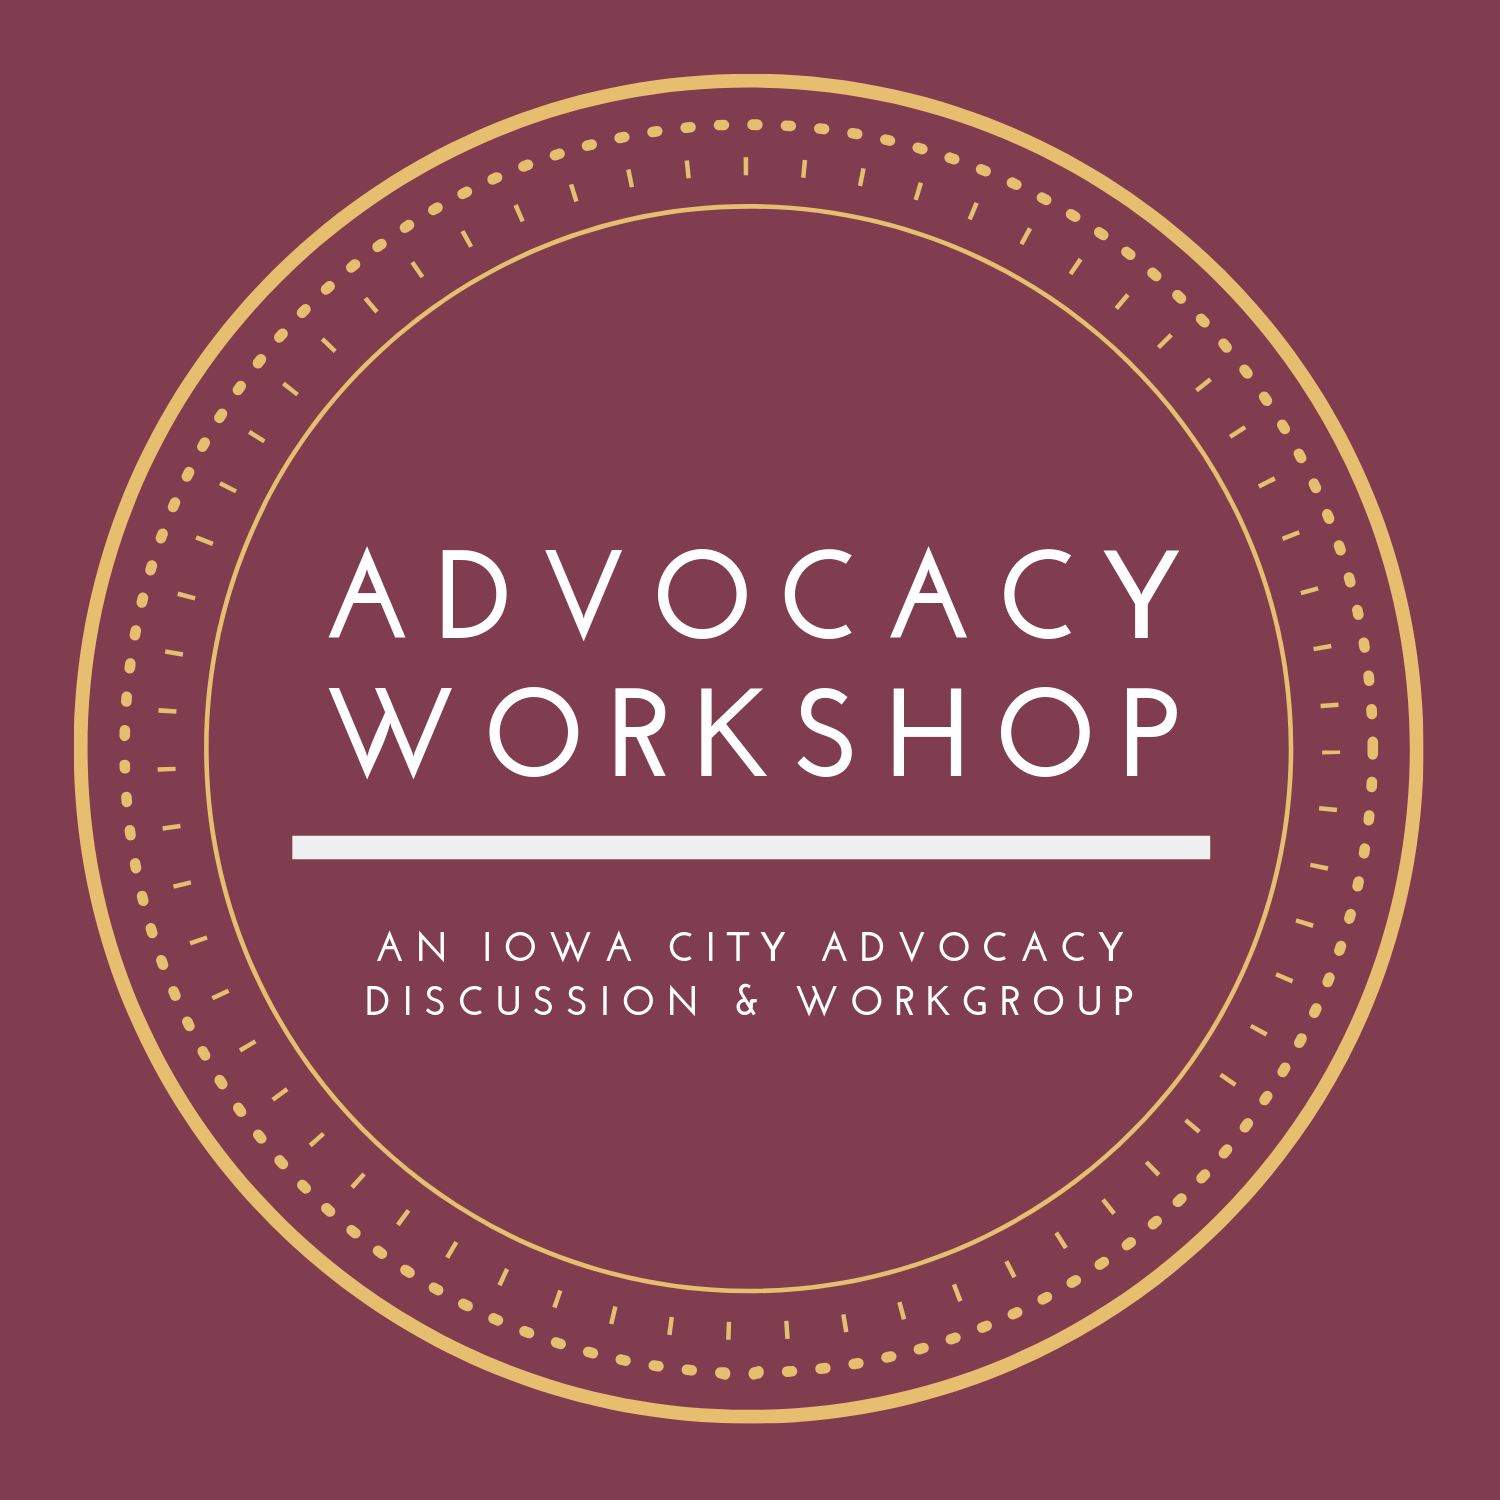 Advocacy workshop logo